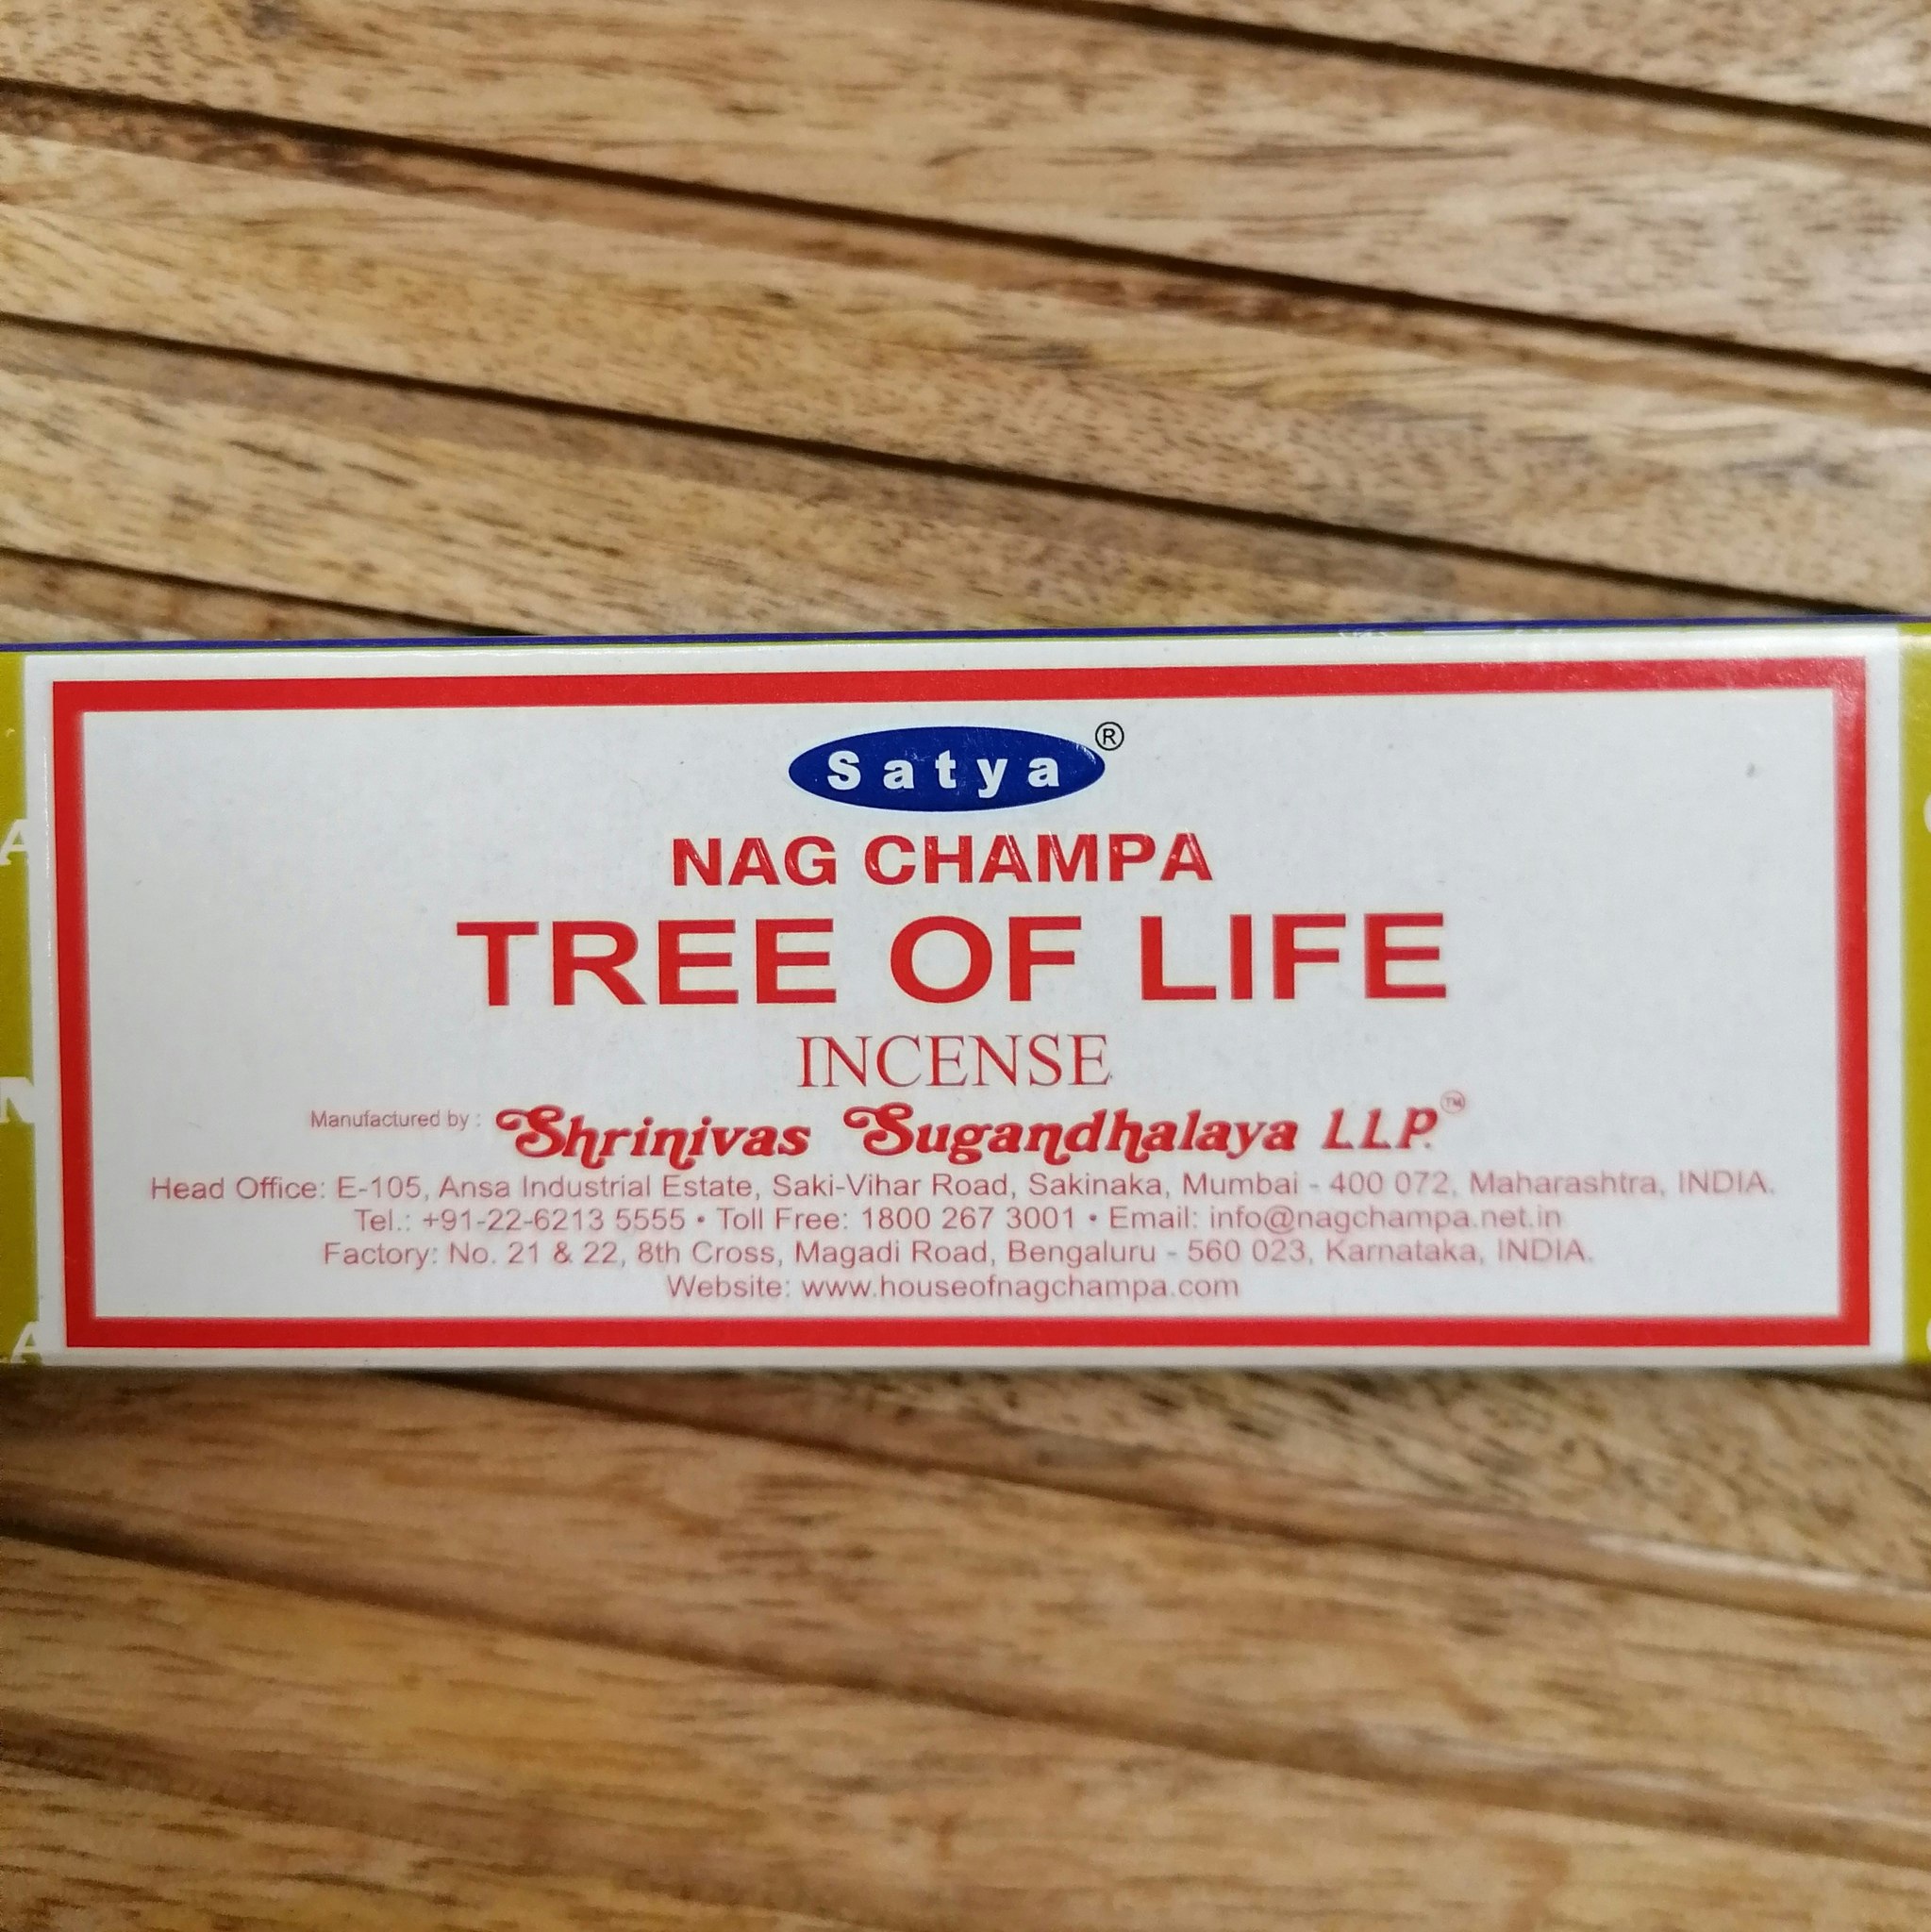 Satya incense Tree of Life Nag Champa